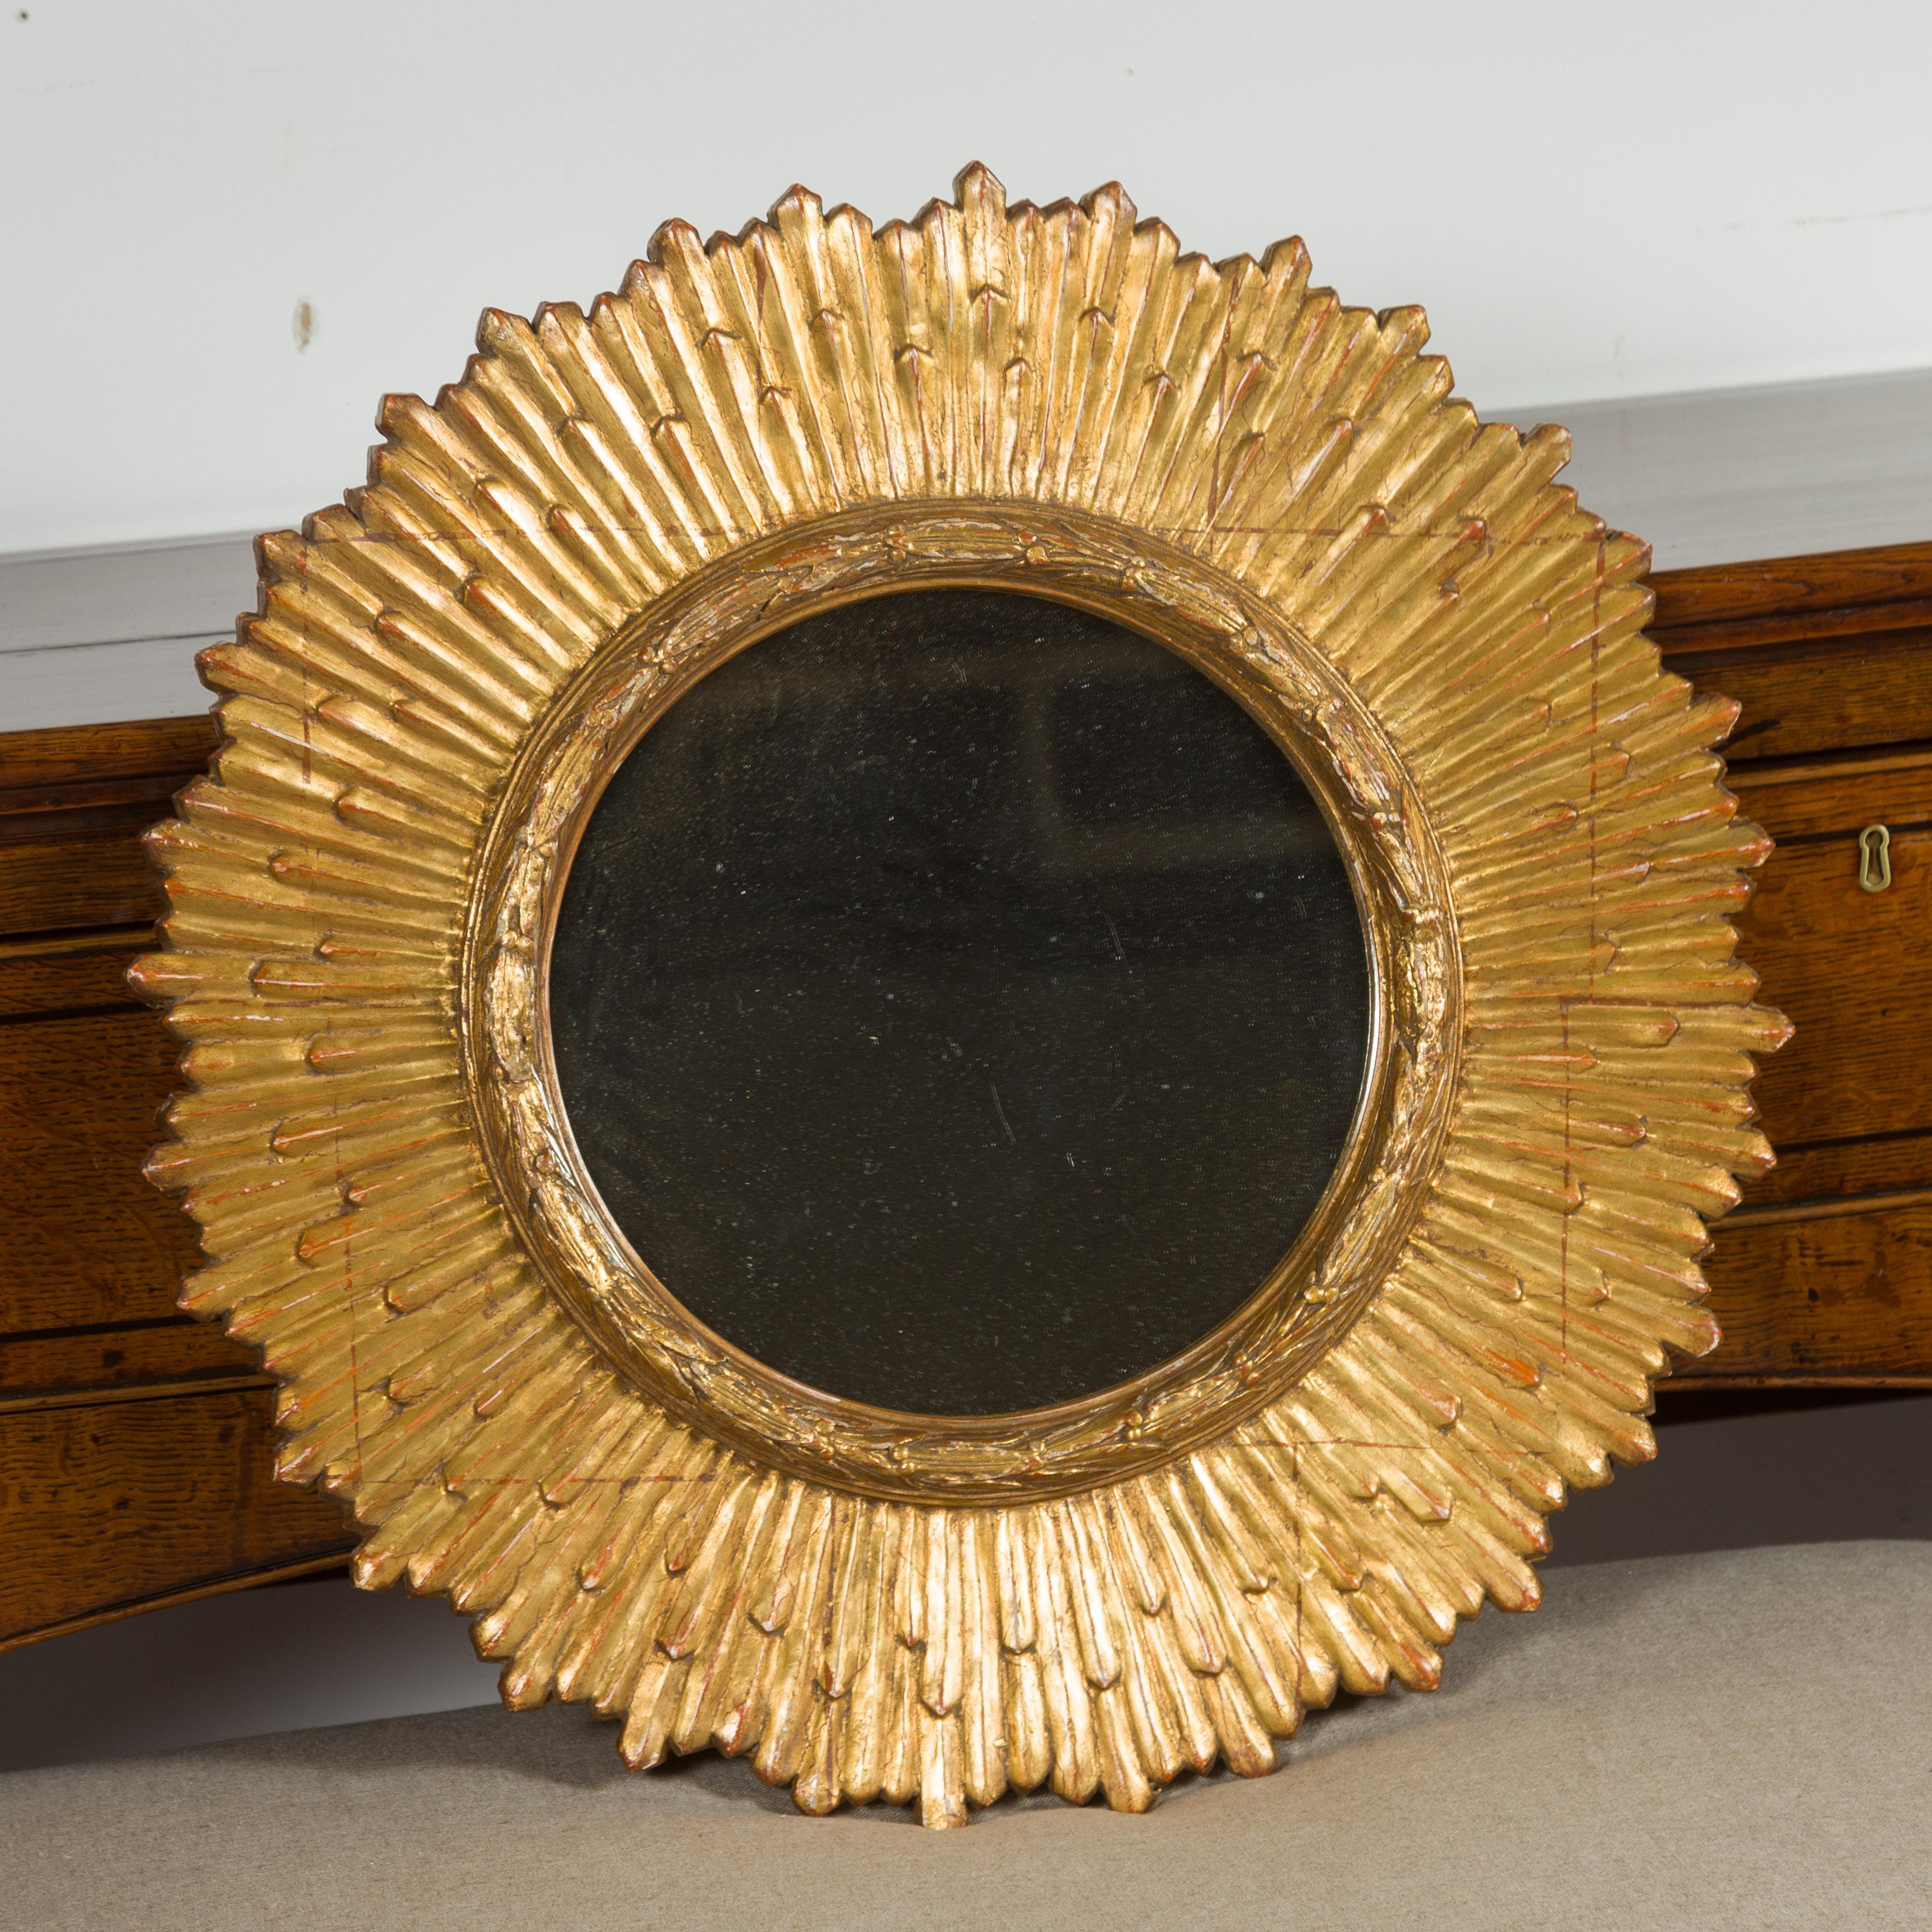 Miroir à soleil en bois doré du milieu du 20e siècle, avec des rayons de tailles légèrement différentes, un cadre sculpté et une teinte rouge. Né en France au milieu du siècle dernier, ce miroir à rayons de soleil présente une glace transparente